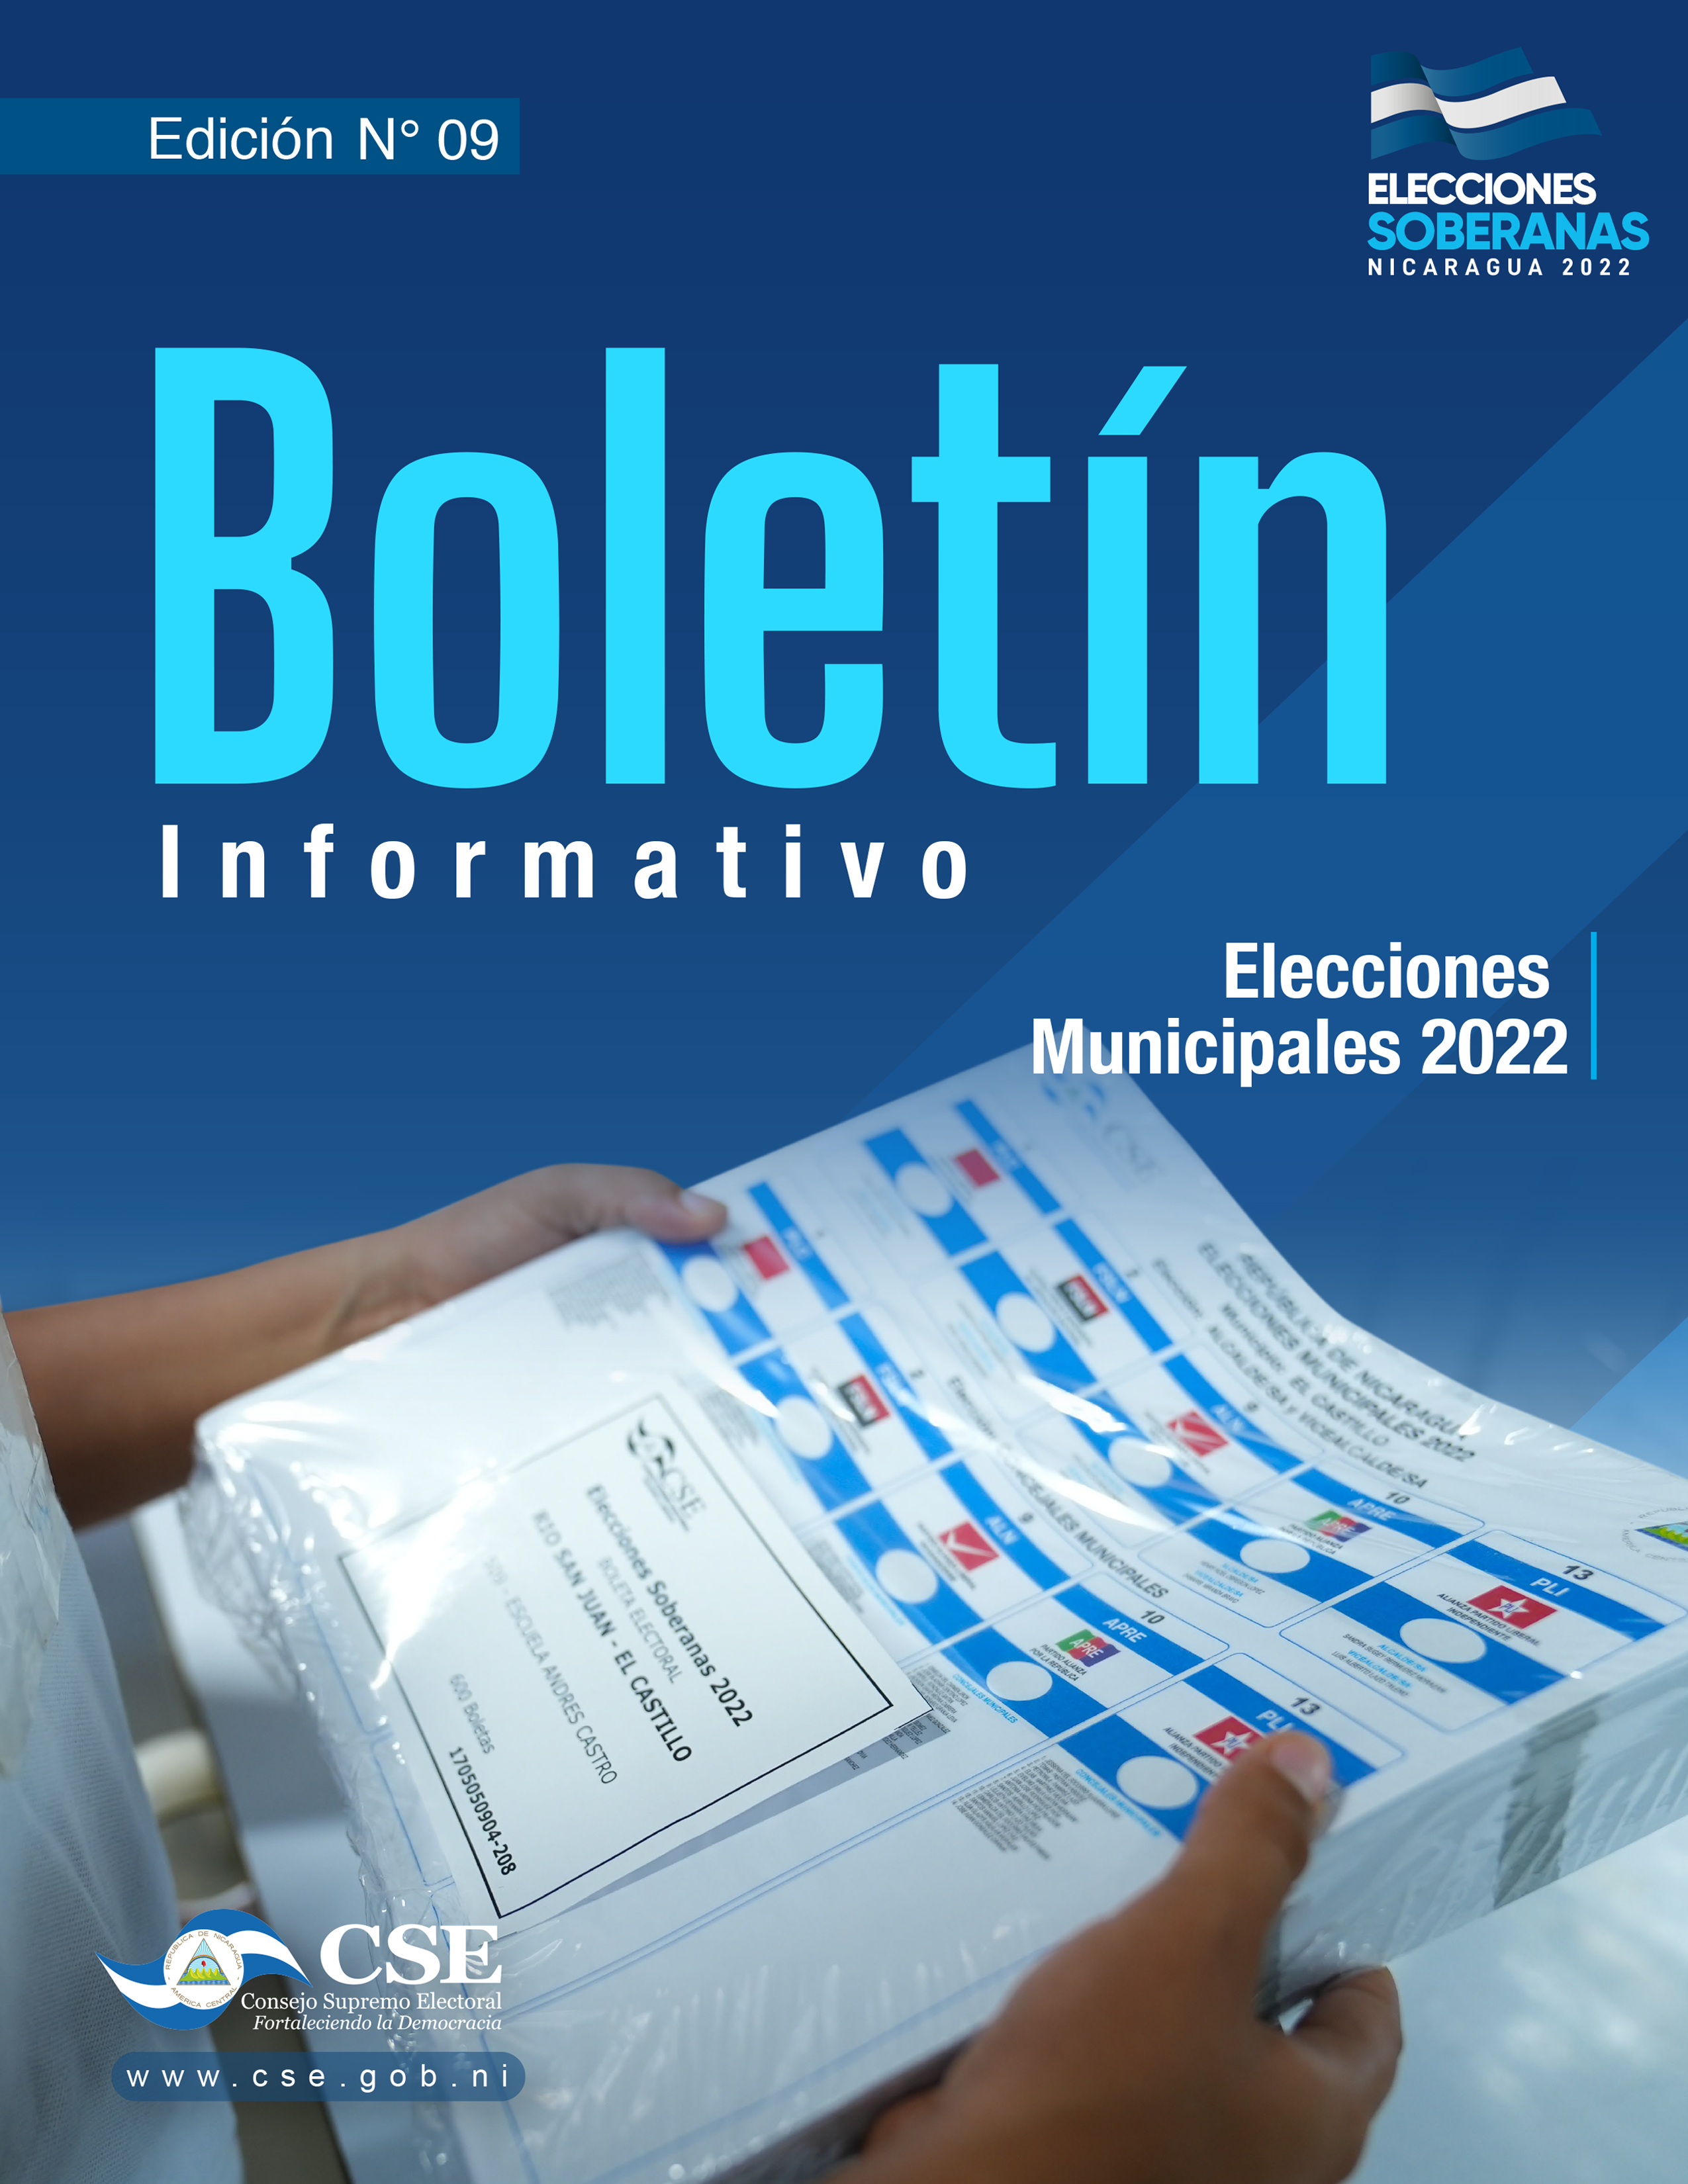 Boletín-Informativo-edicion-09-Elecciones-Municipales-2022